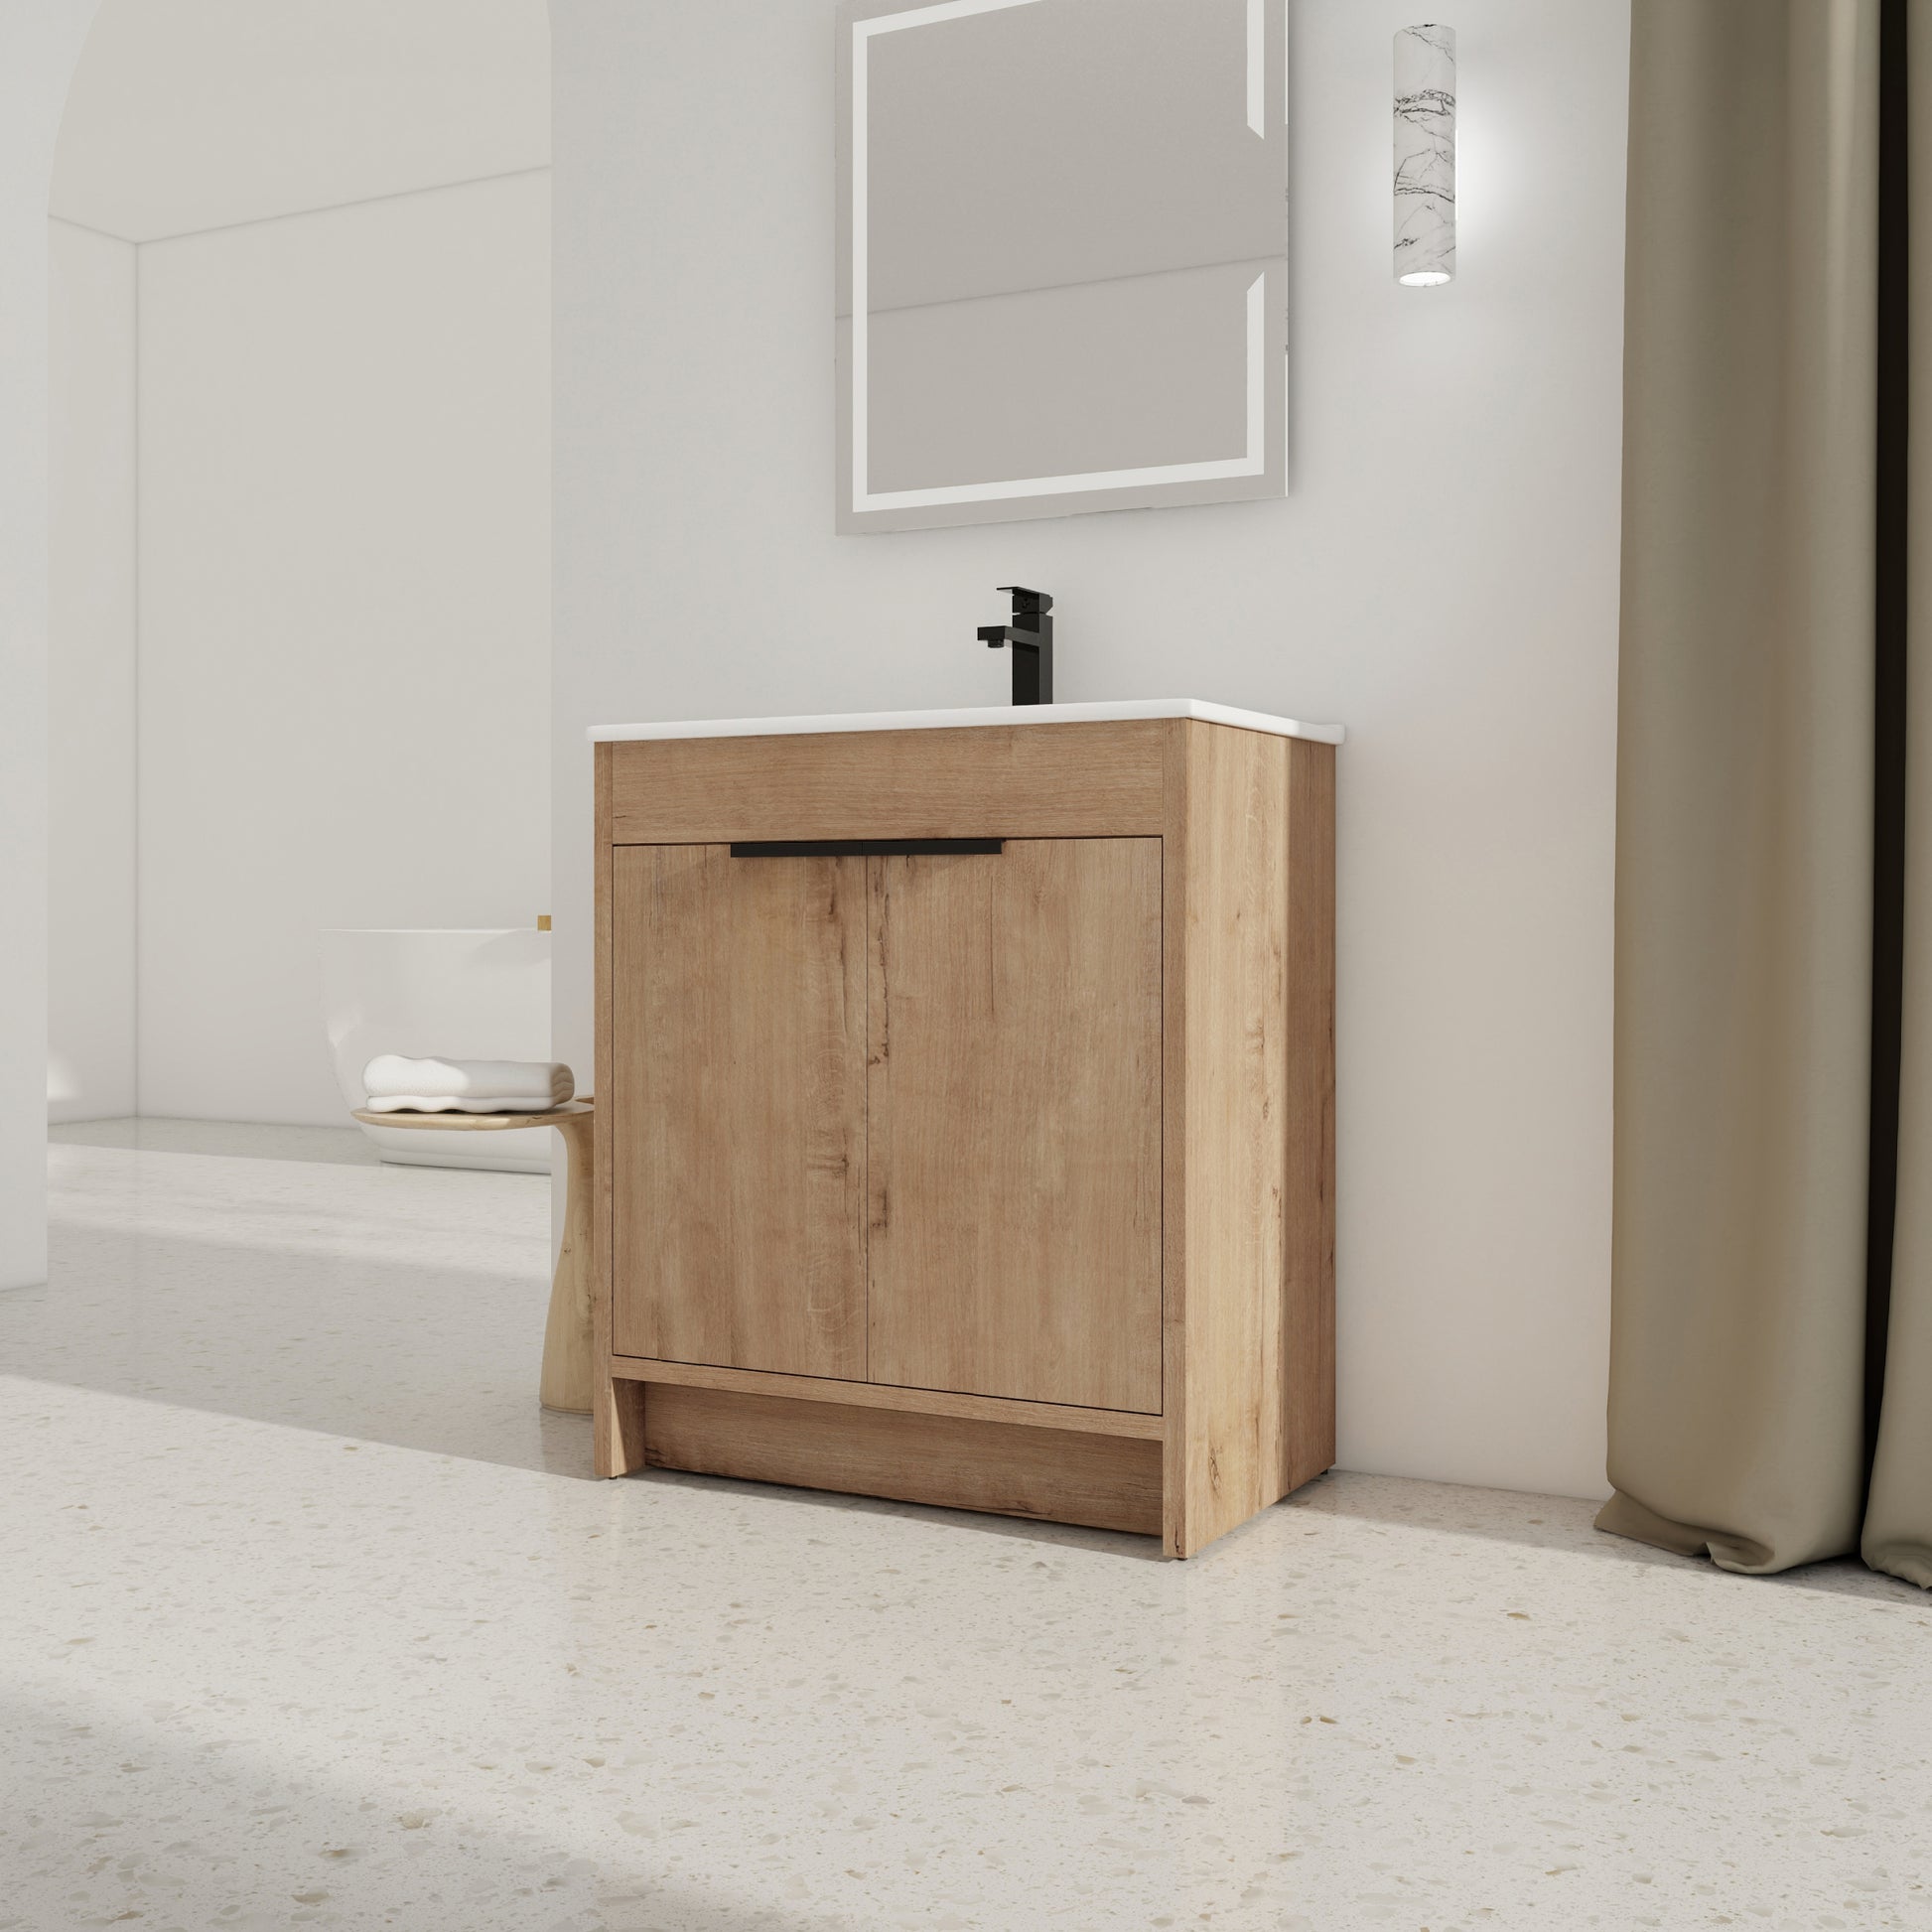 30" Freestanding Bathroom Vanity with White Ceramic imitative